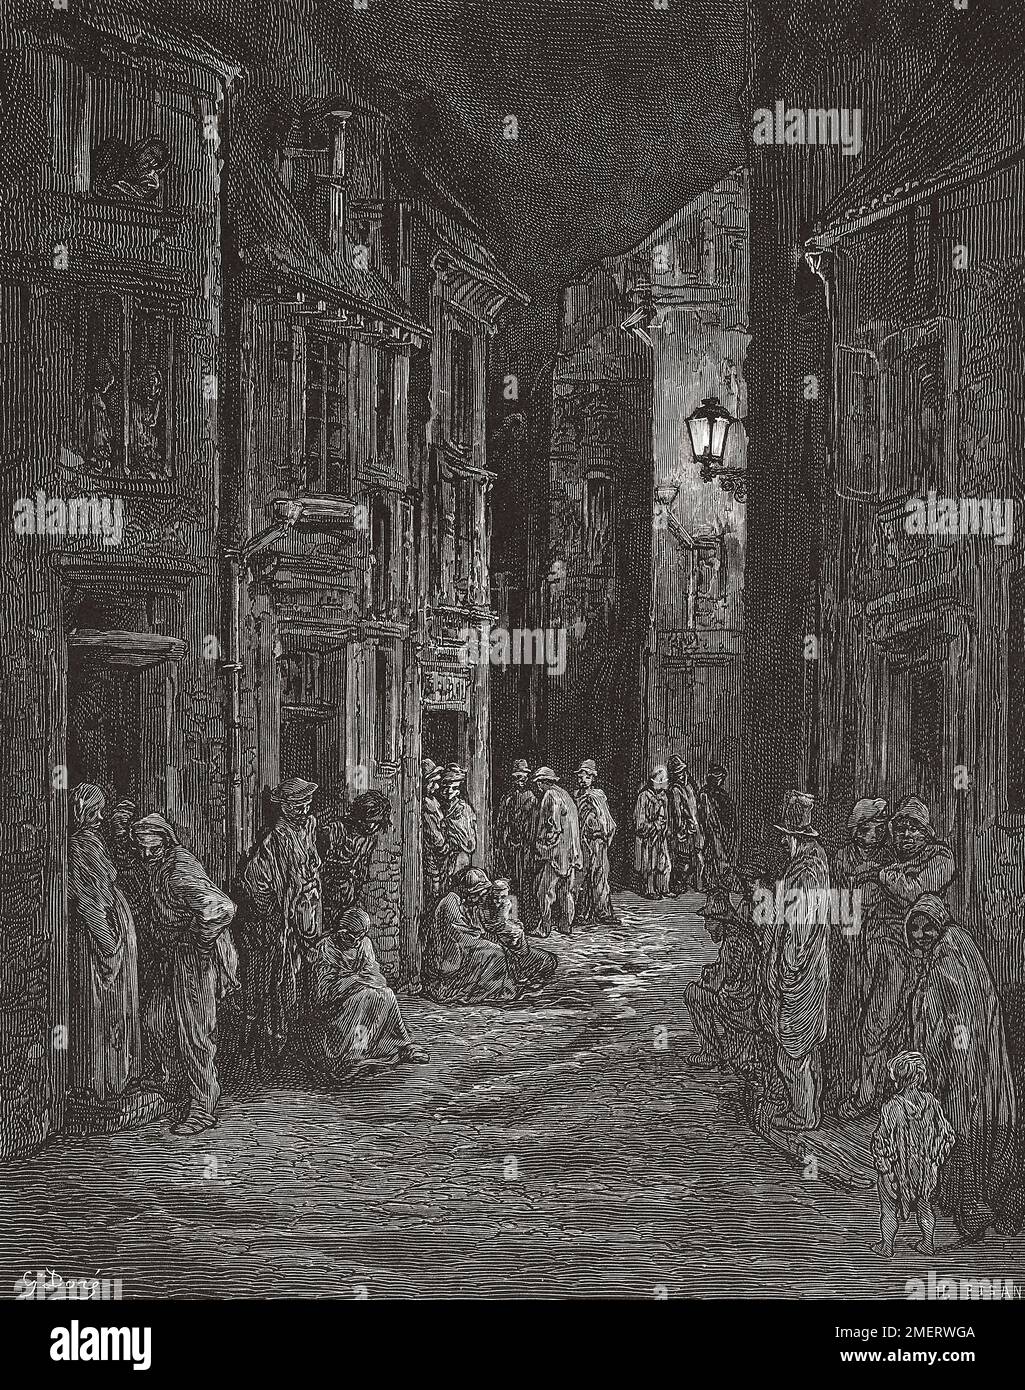 Bluegate Fields, Shadwell, eines der schlimmsten Slums in London im 19. Jahrhundert. Nach einer Illustration von Gustave Doré in der amerikanischen Ausgabe von London 1890: Eine Pilgerreise, geschrieben von Blanchard Jerrold und illustriert von Gustave Doré. Stockfoto